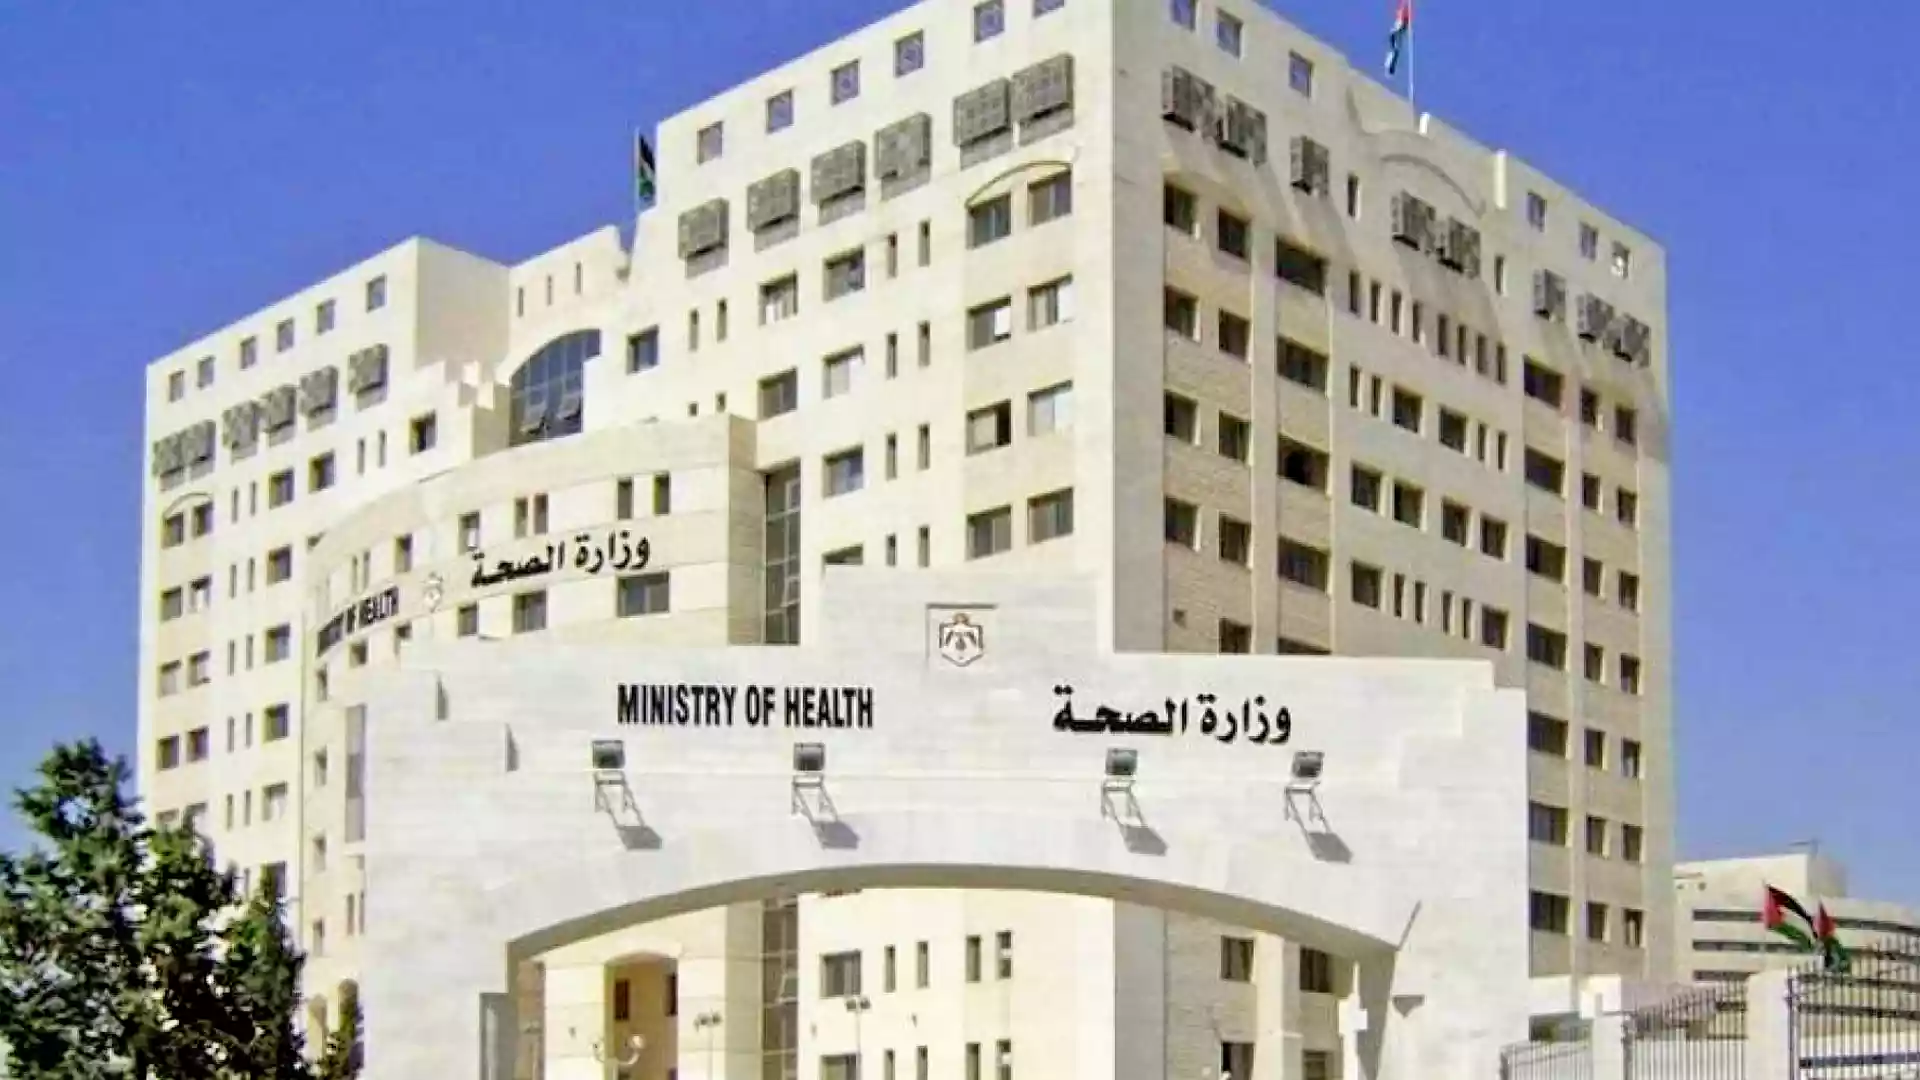 الصحة: إخلاء أقسام بمستشفى الملكة رانيا وعودة العمل تدريجيا